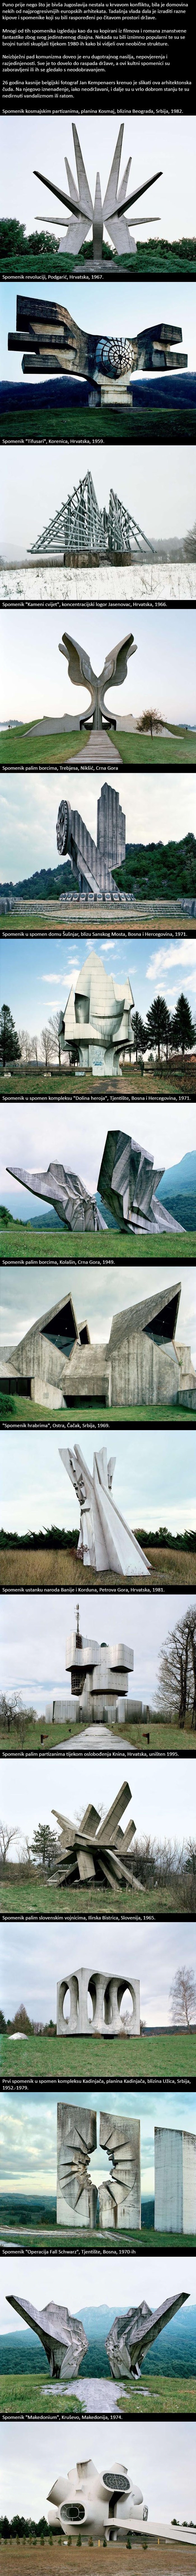 Zadivljujući jugoslavenski spomenici koji izgledaju kao da su iz znanstvenofantastičnog filma